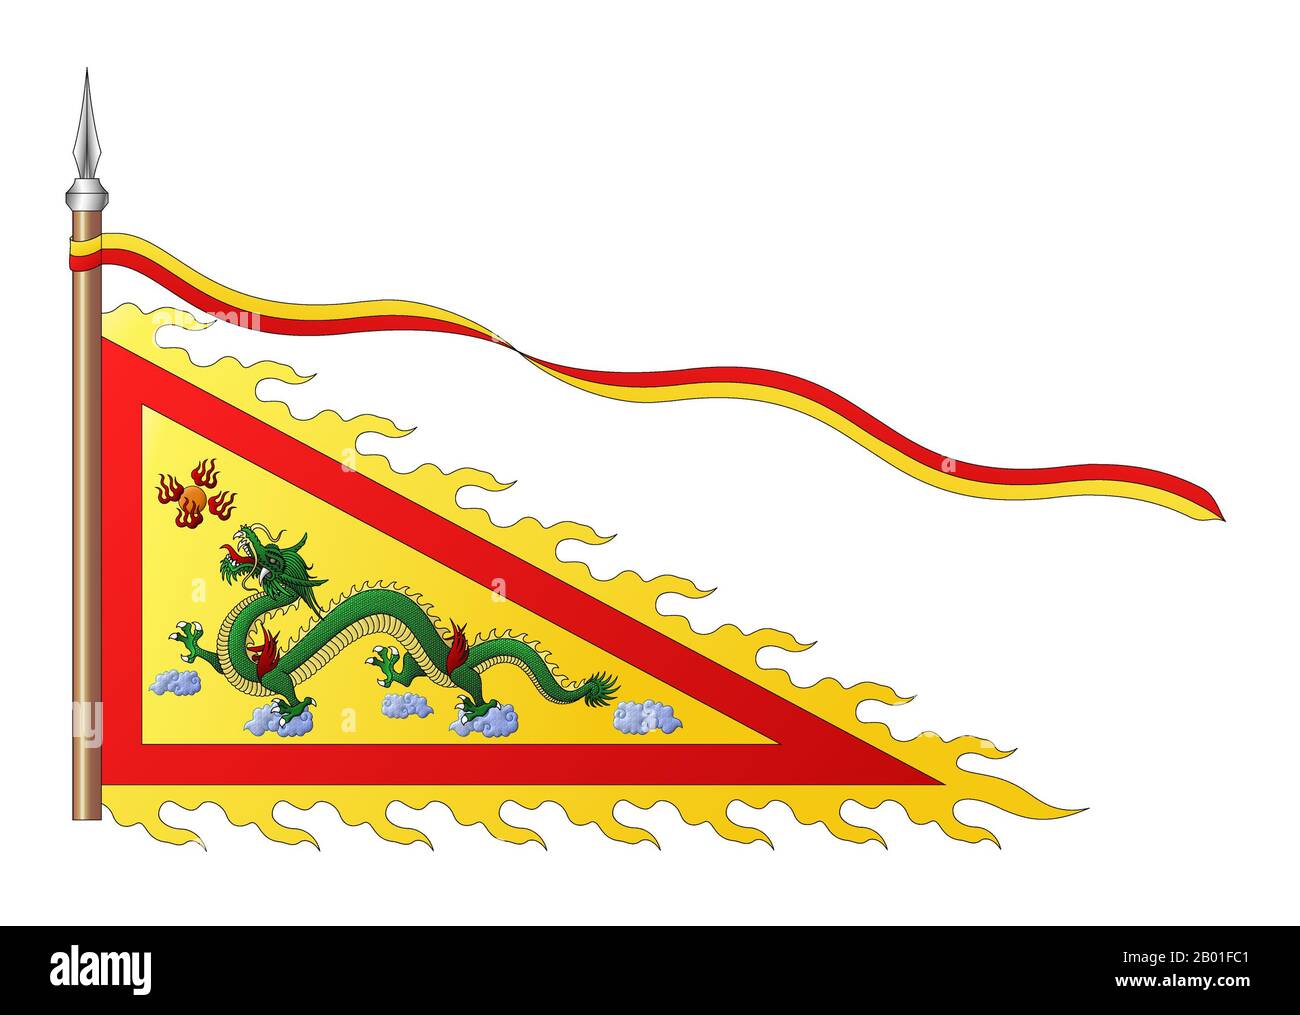 Vietnam: Pennant imperiale della dinastia Nguyen (1802-1945). 1940s. La dinastia Nguyễn fu l'ultima famiglia dominante del Vietnam. La loro regola durò un totale di 143 anni. Iniziò nel 1802 quando l'imperatore Gia Long salì al trono dopo aver sconfitto la dinastia Tây Sơn e finì nel 1945 quando Bảo Đại abdicò al trono e trasferì il potere alla Repubblica Democratica del Vietnam. Durante il regno dell'imperatore Gia Long, la nazione divenne ufficialmente conosciuta come Việt Nam, ma dal regno dell'imperatore Minh Mạng on, la nazione fu rinominata Đại Nam o "Grande Sud". Foto Stock